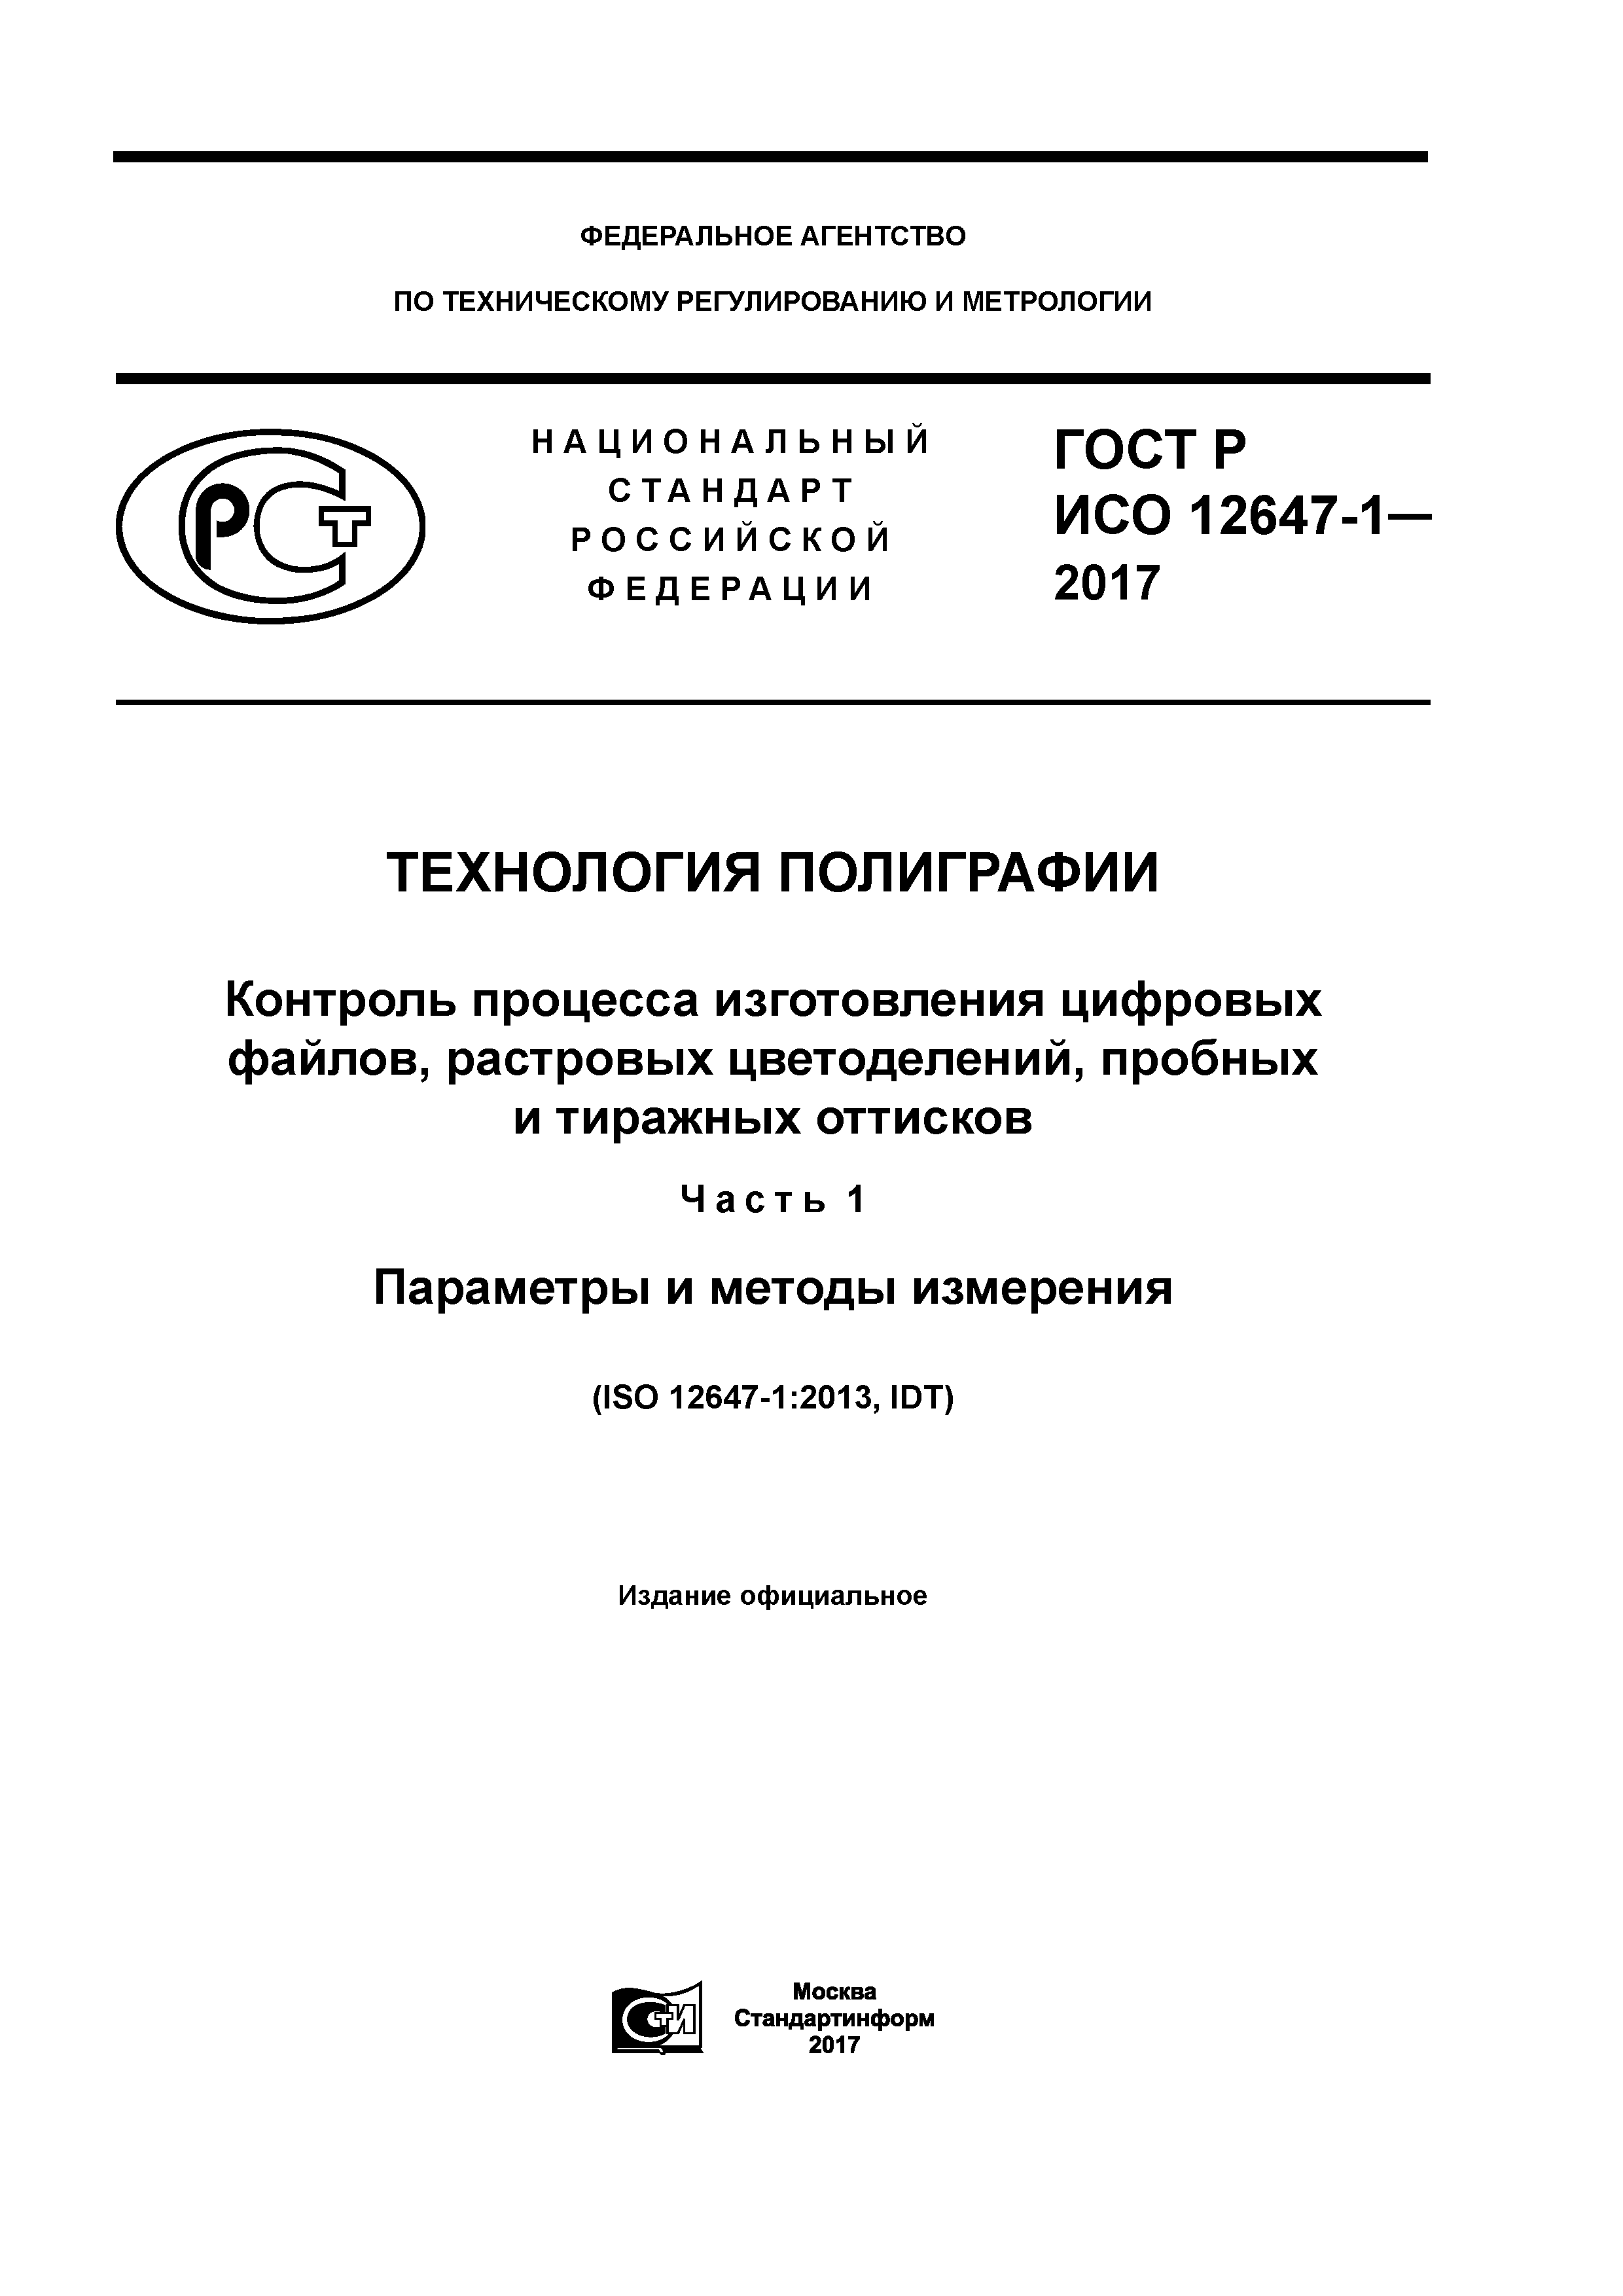 ГОСТ Р ИСО 12647-1-2017